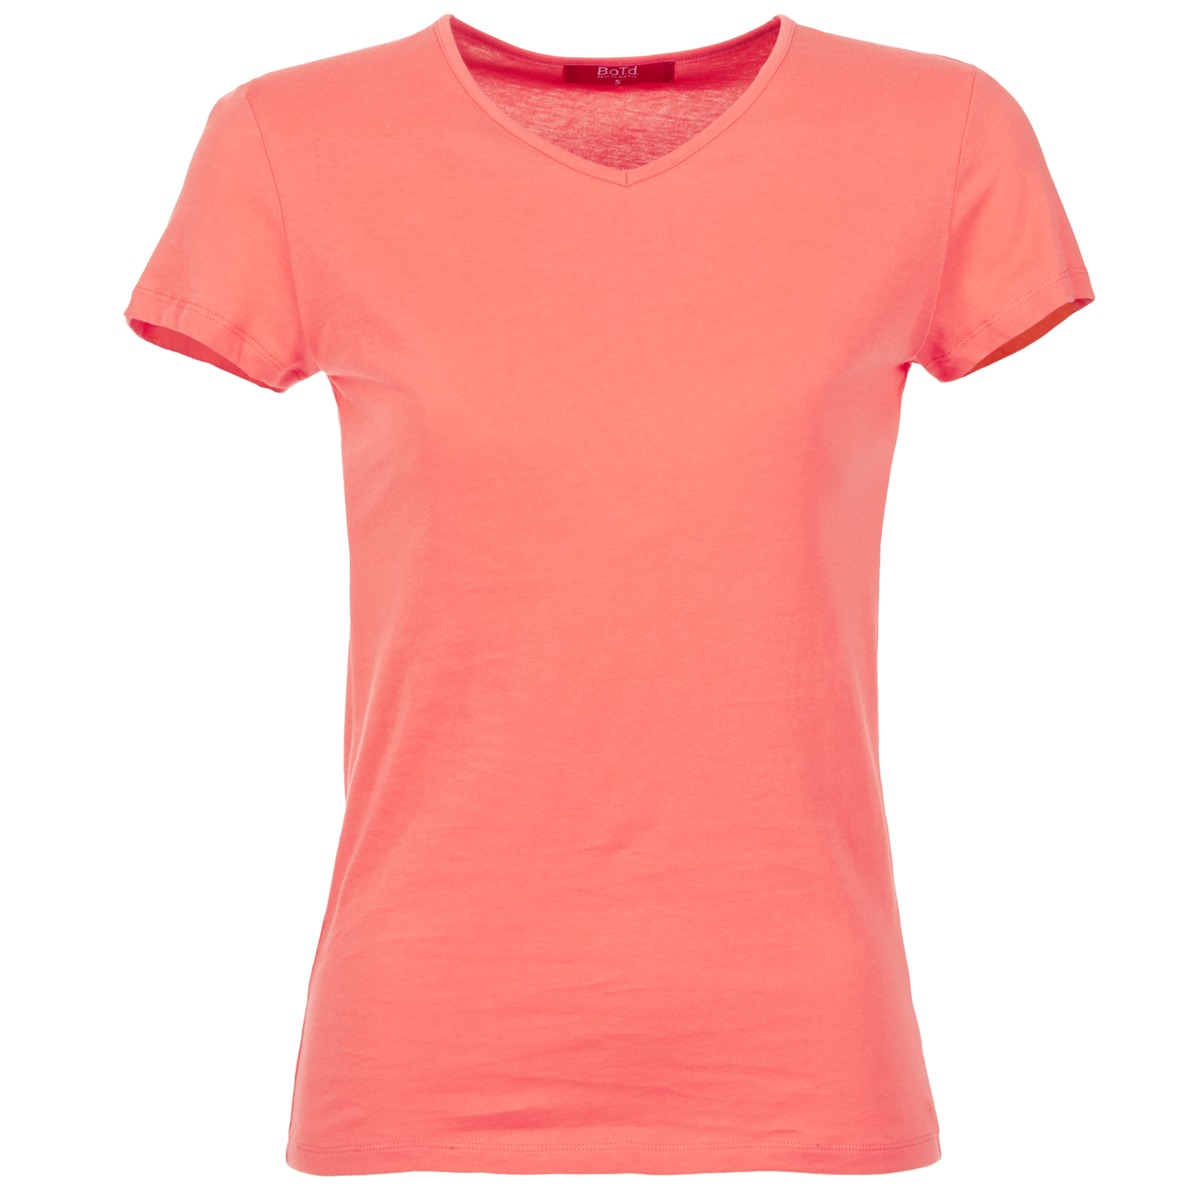 Textil Ženy Trička s krátkým rukávem BOTD EFLOMU Oranžová